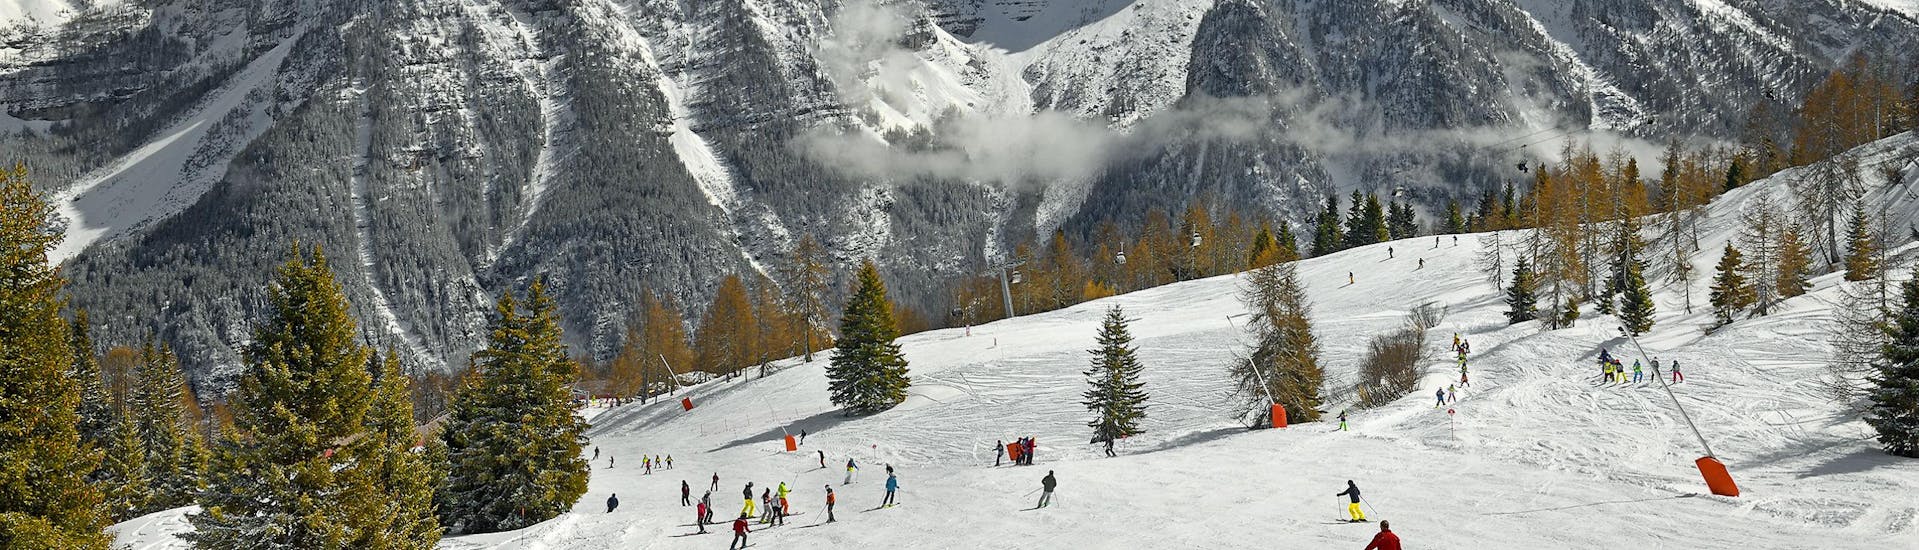 Ein atemberaubender Blick auf die Dolomiten von den Skipisten in Folgarida, wo örtliche Skischulen ihre Skikurse für Leute die das Skifahren lernen wollen abhalten.